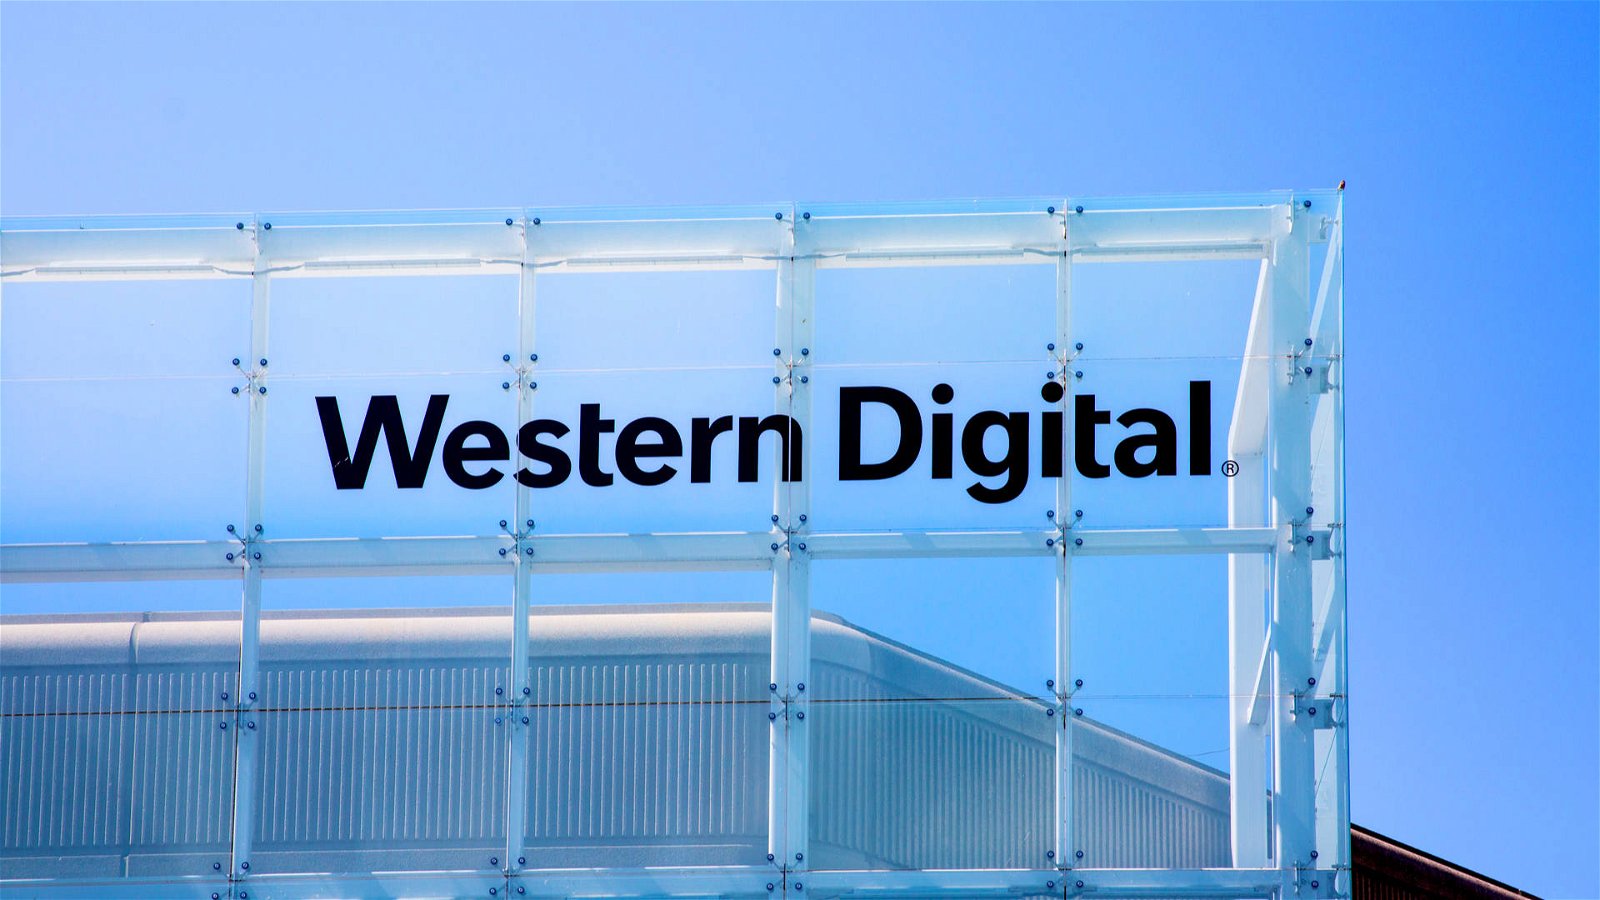 Immagine di Caso Huawei, anche Western Digital abbandona il colosso cinese